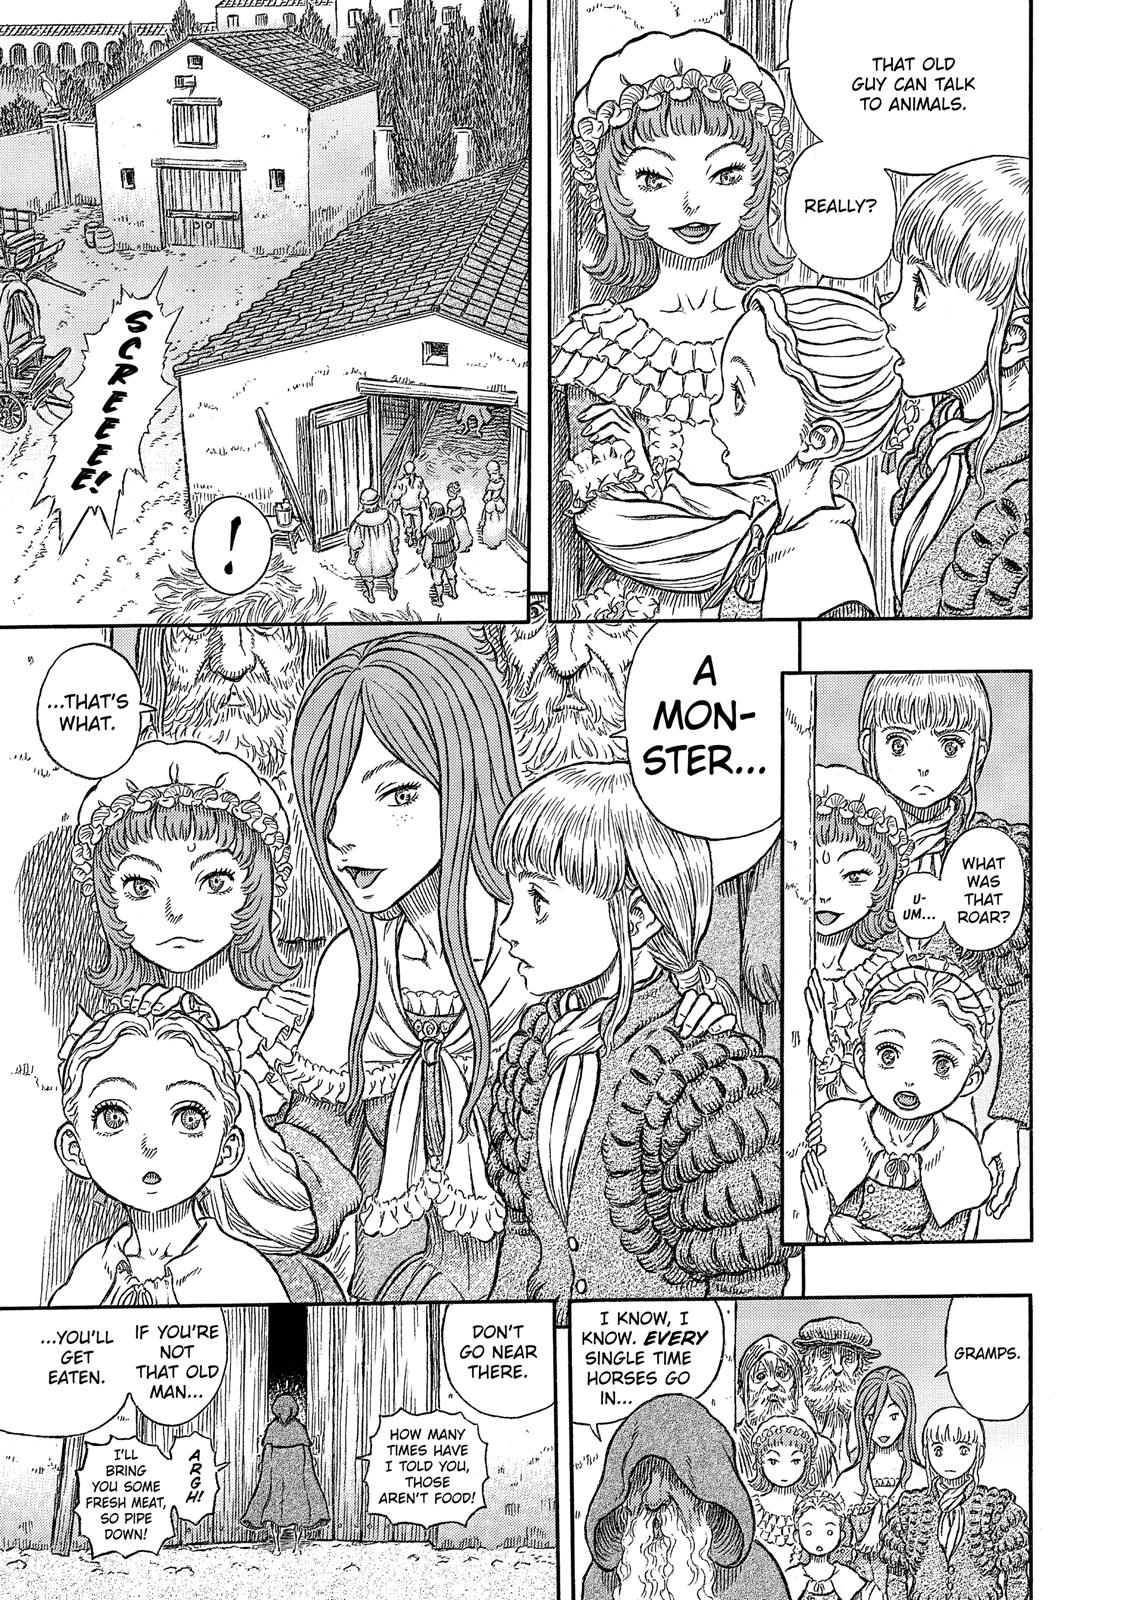 Berserk Manga Chapter 334 image 24